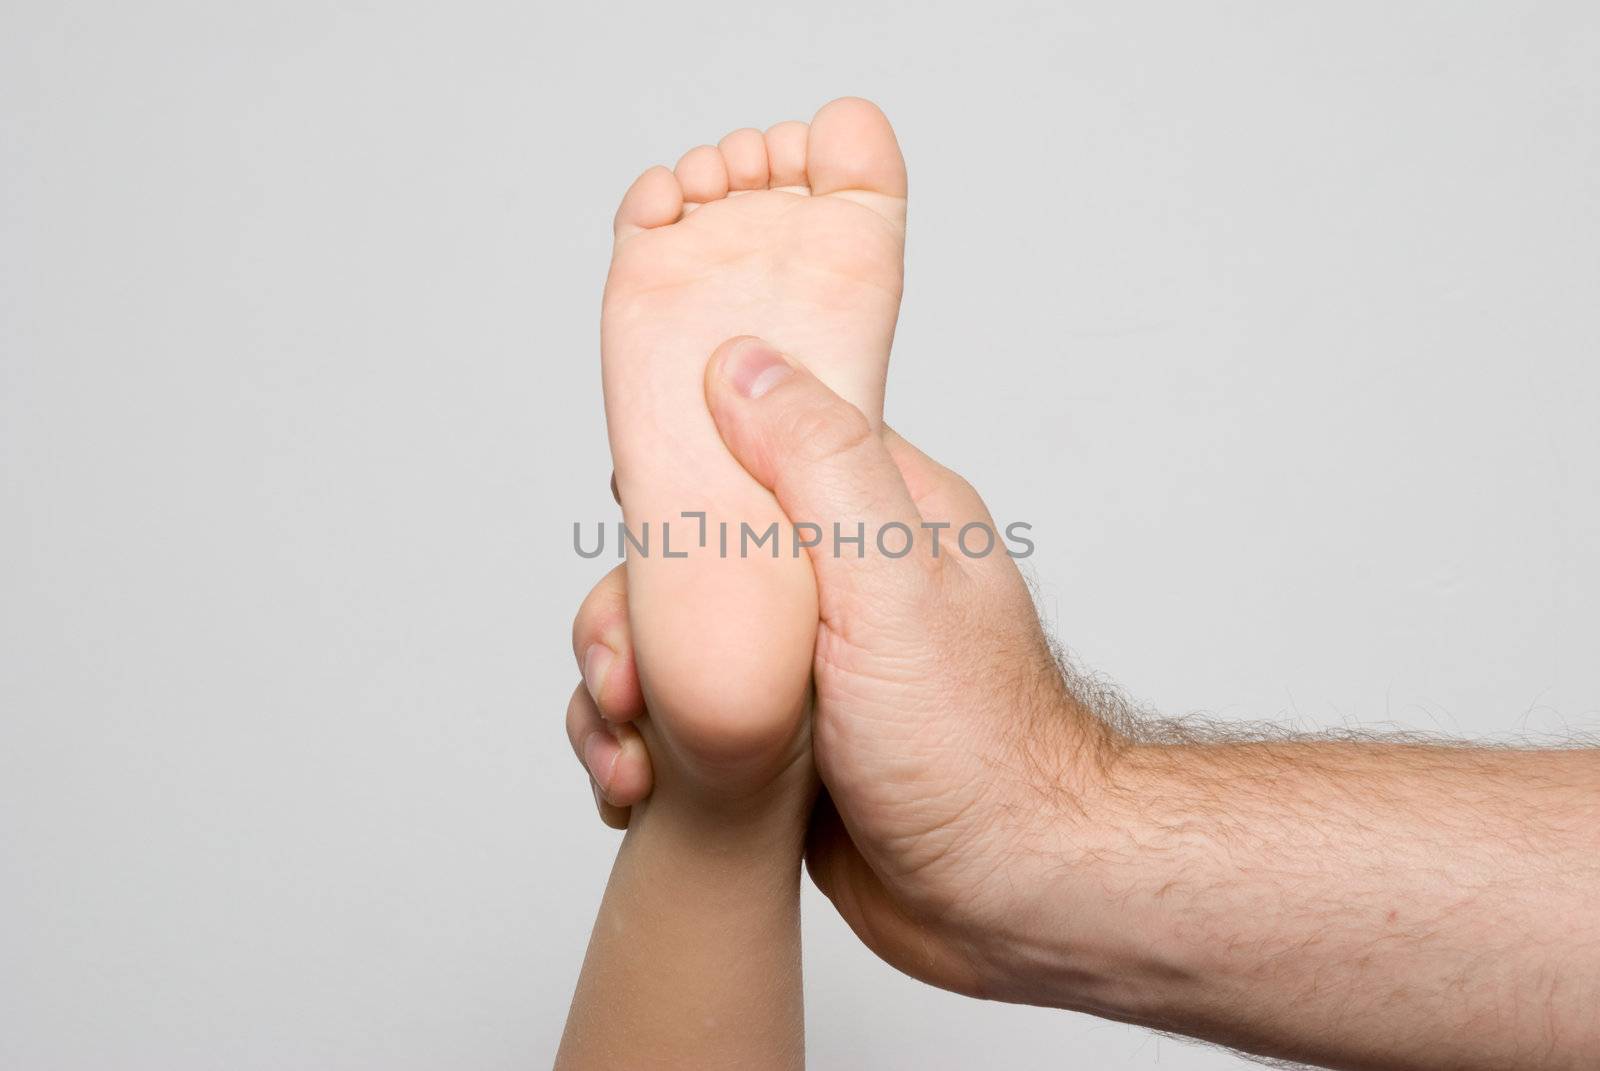 Children's foot in a man's hand. Massage